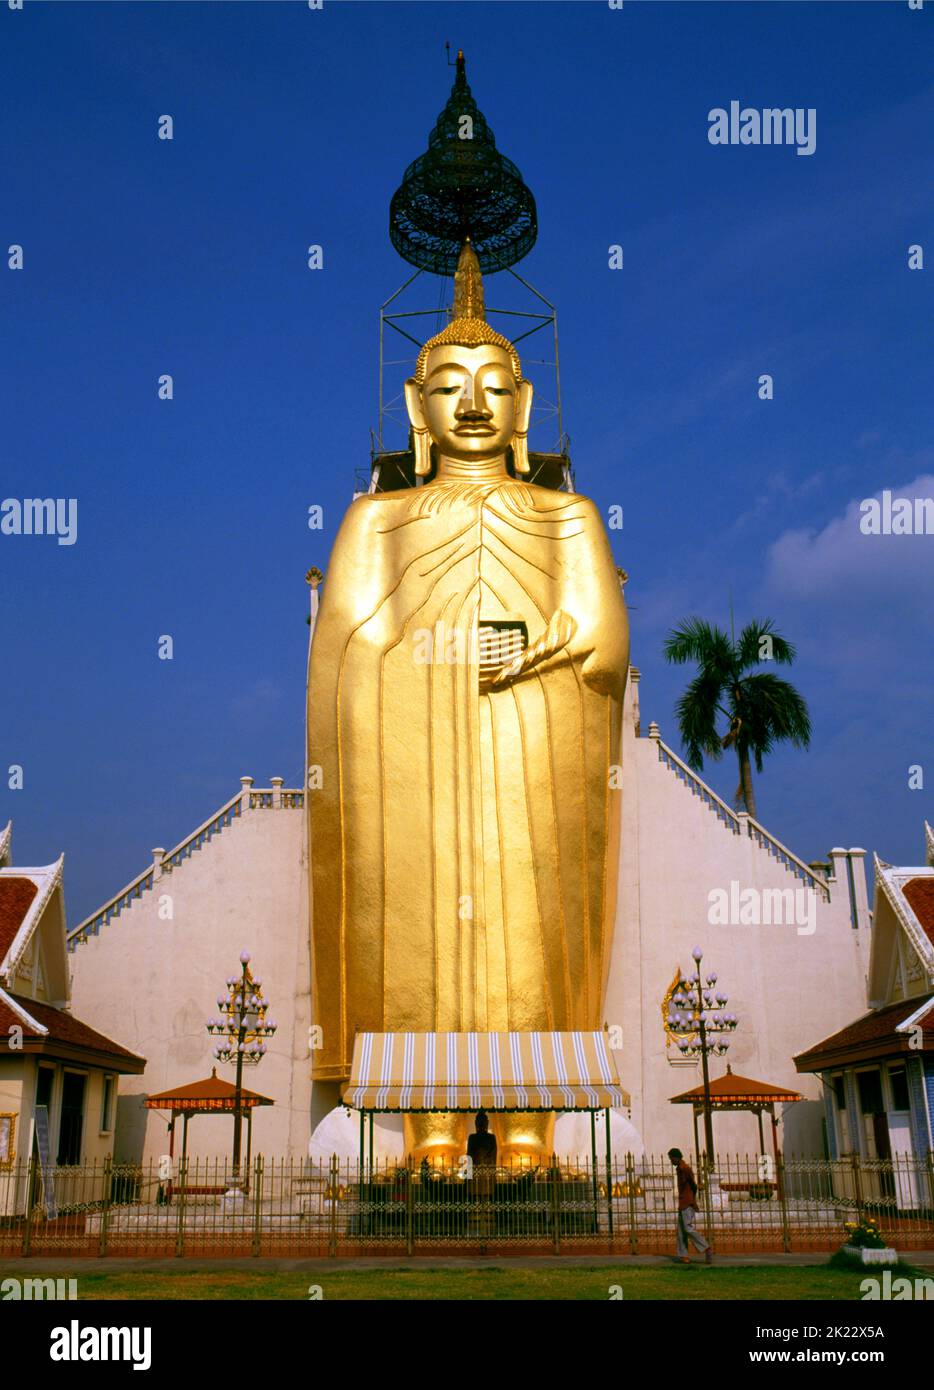 Thailandia: Buddha gigante in piedi, Wat Intharawihan, Bangkok. La caratteristica principale del Wat Intharawihan di Bangkok è il Buddha alto 32 metri chiamato Luang Pho To o Phrasiariyametri. Ci sono voluti più di 60 anni per completare ed è decorato in vetro mosaici e oro 24 carati. Il topknot dell'immagine di Buddha contiene una reliquia di Buddha del Signore portata dallo Sri Lanka. Il tempio fu costruito all'inizio del periodo Ayutthaya. Foto Stock